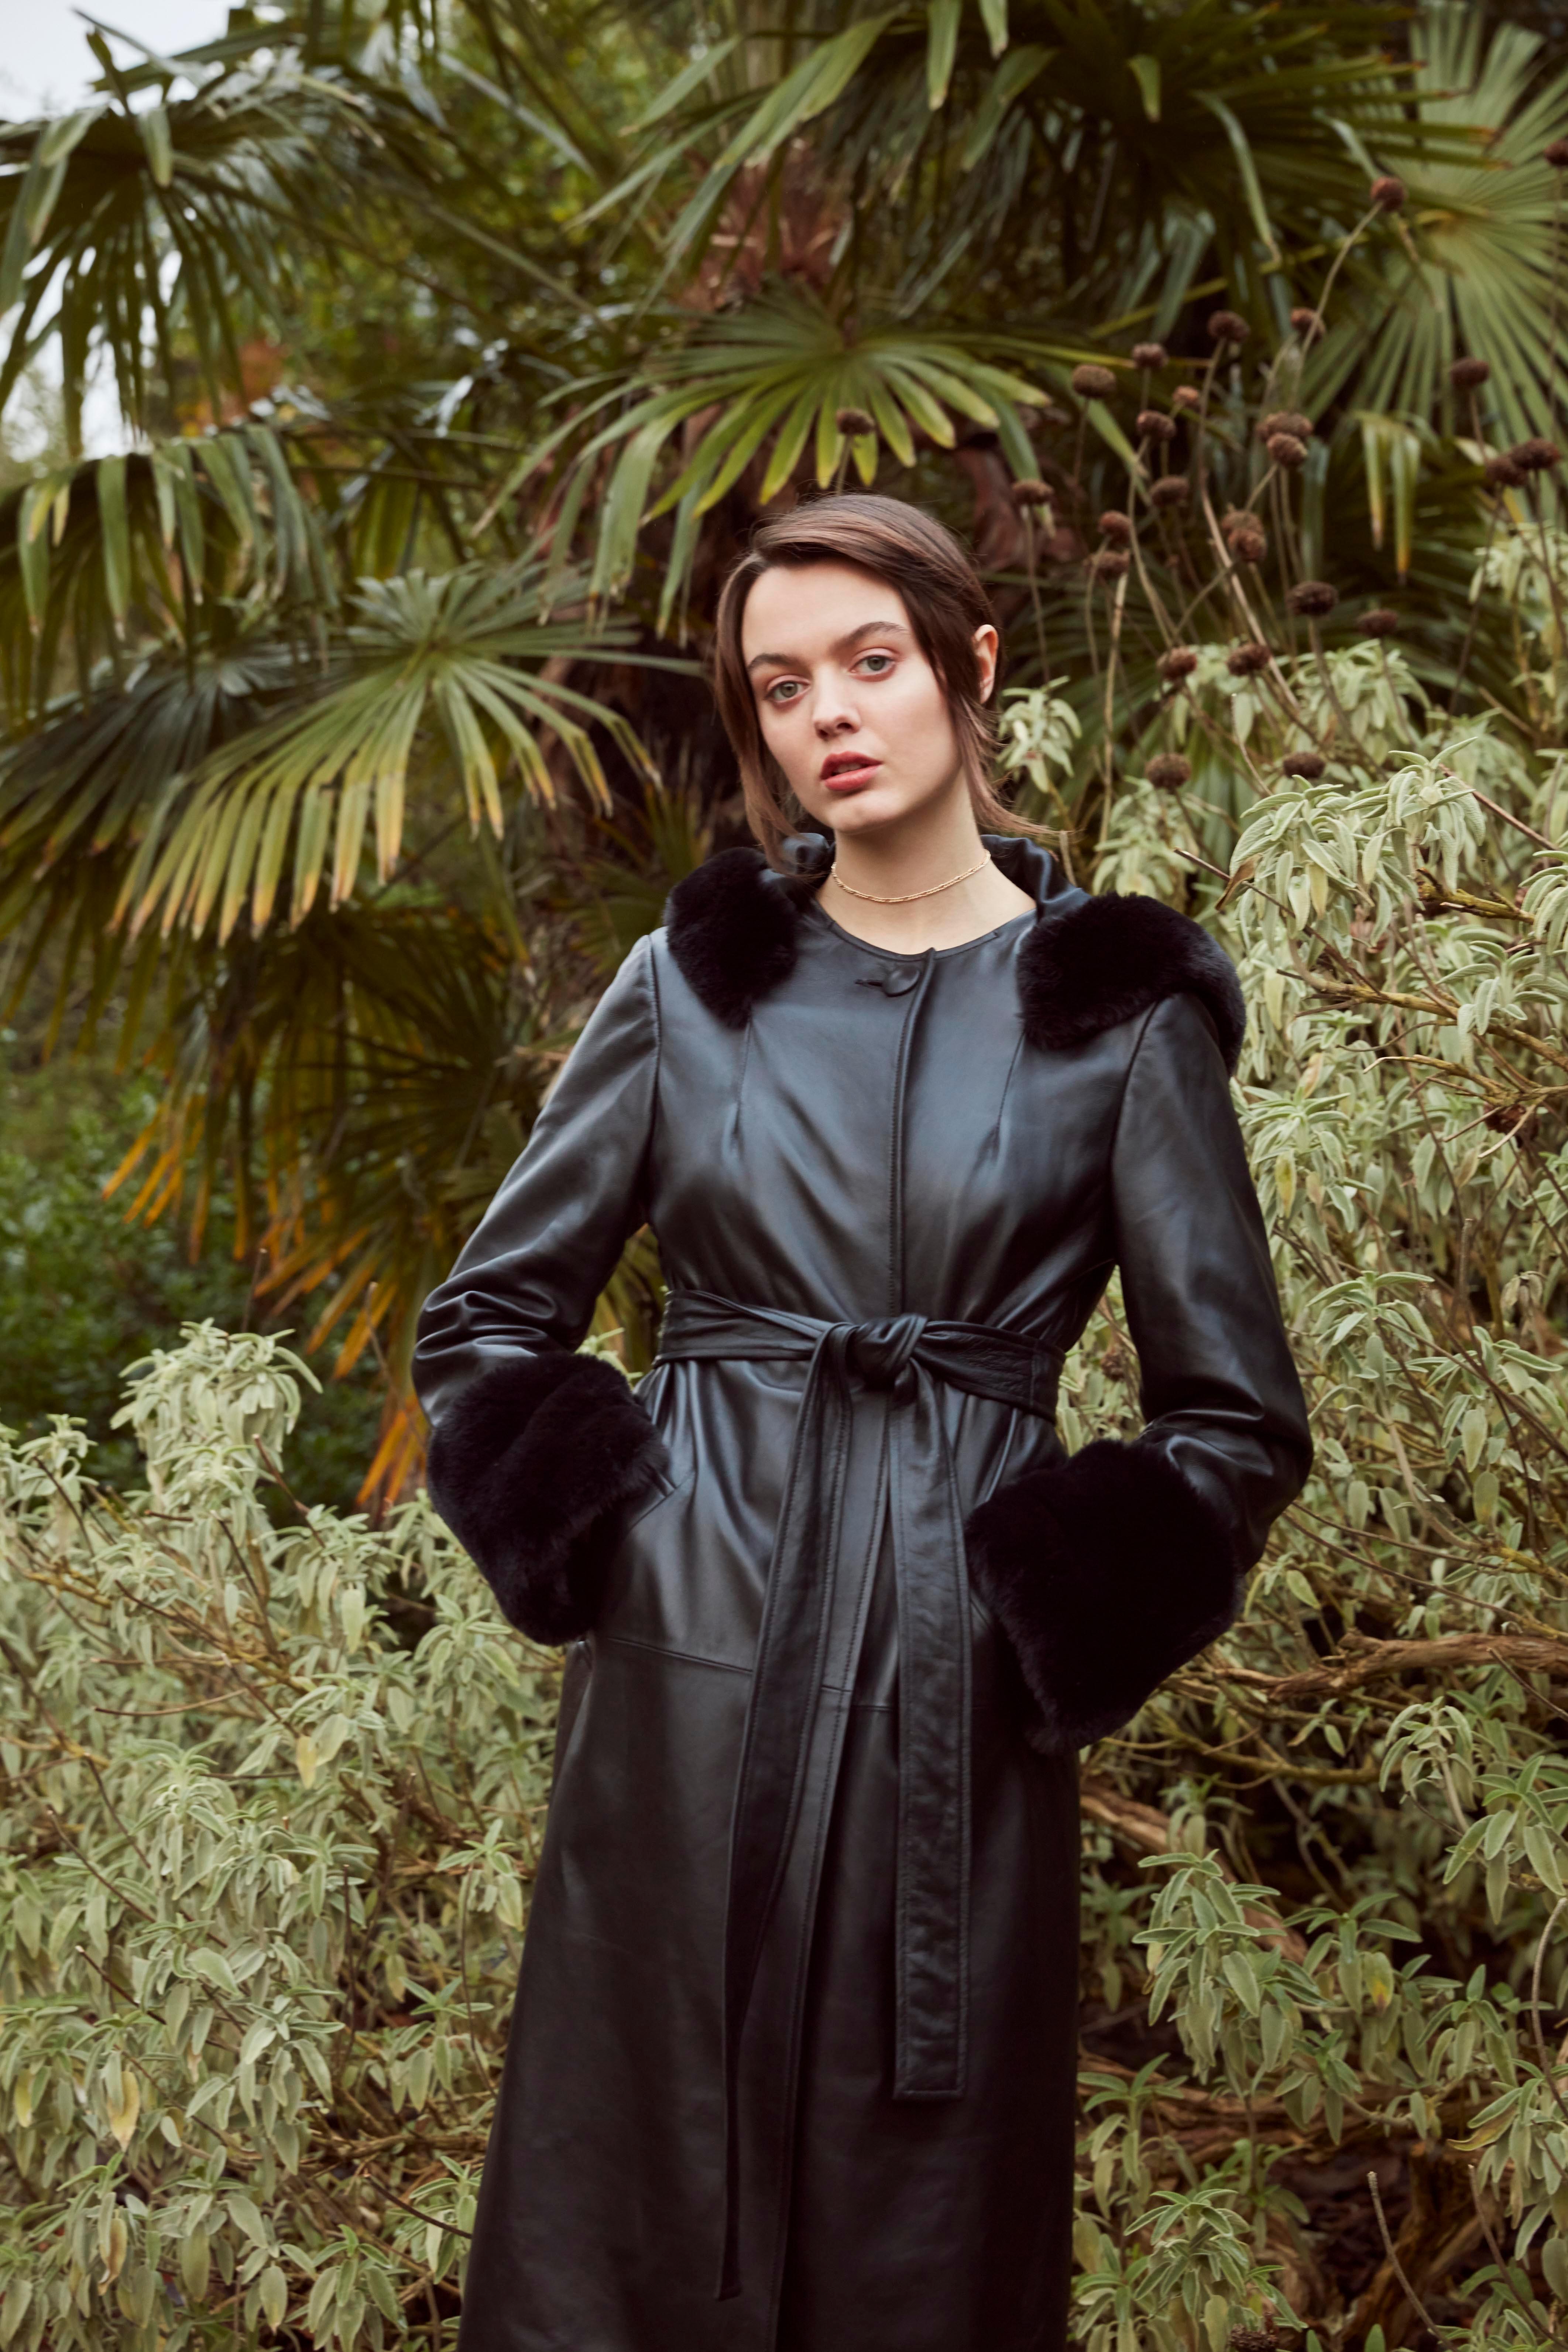 Women's Verheyen London Hooded Leather Trench Coat in Black with Faux Fur - Size uk 14 